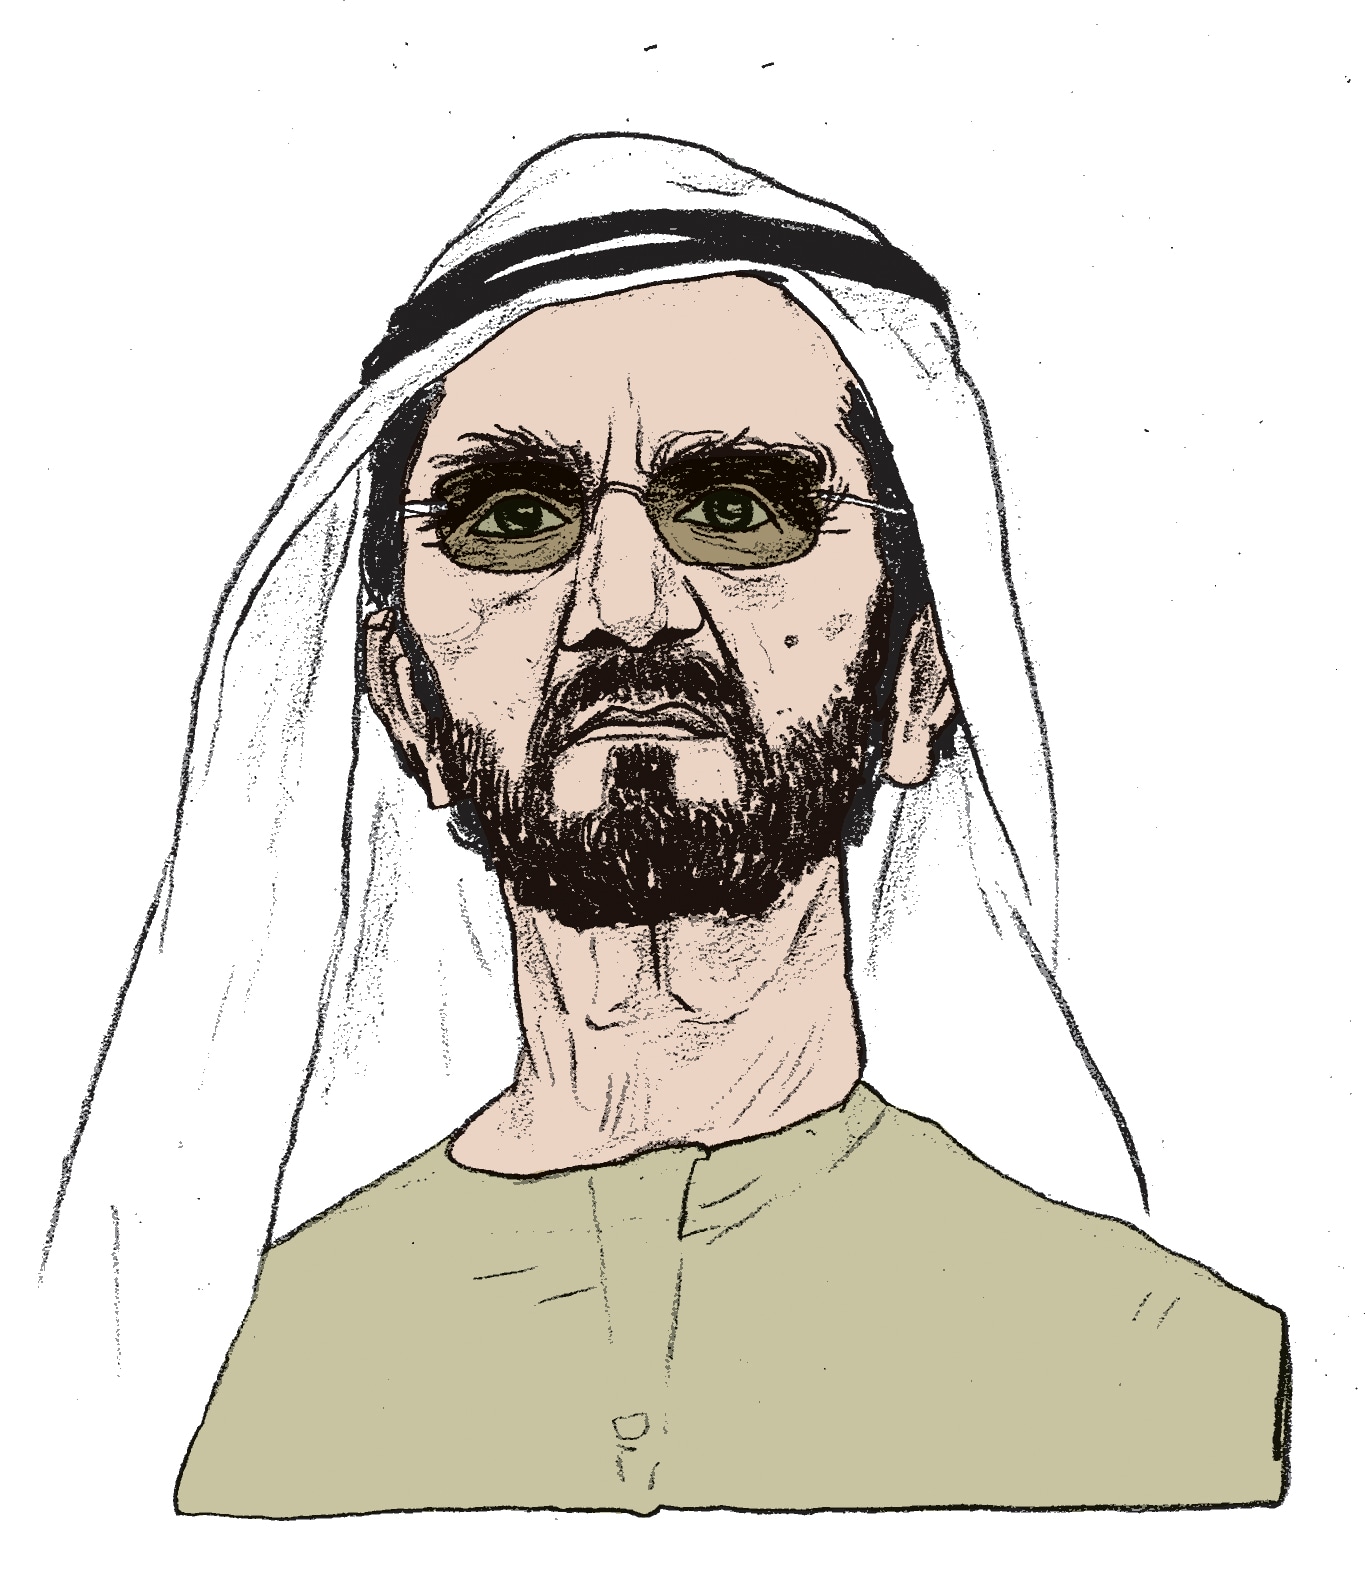 De emir van Dubai zit in nauwe schoentjes. En dat bewijst dat niet álles te koop is